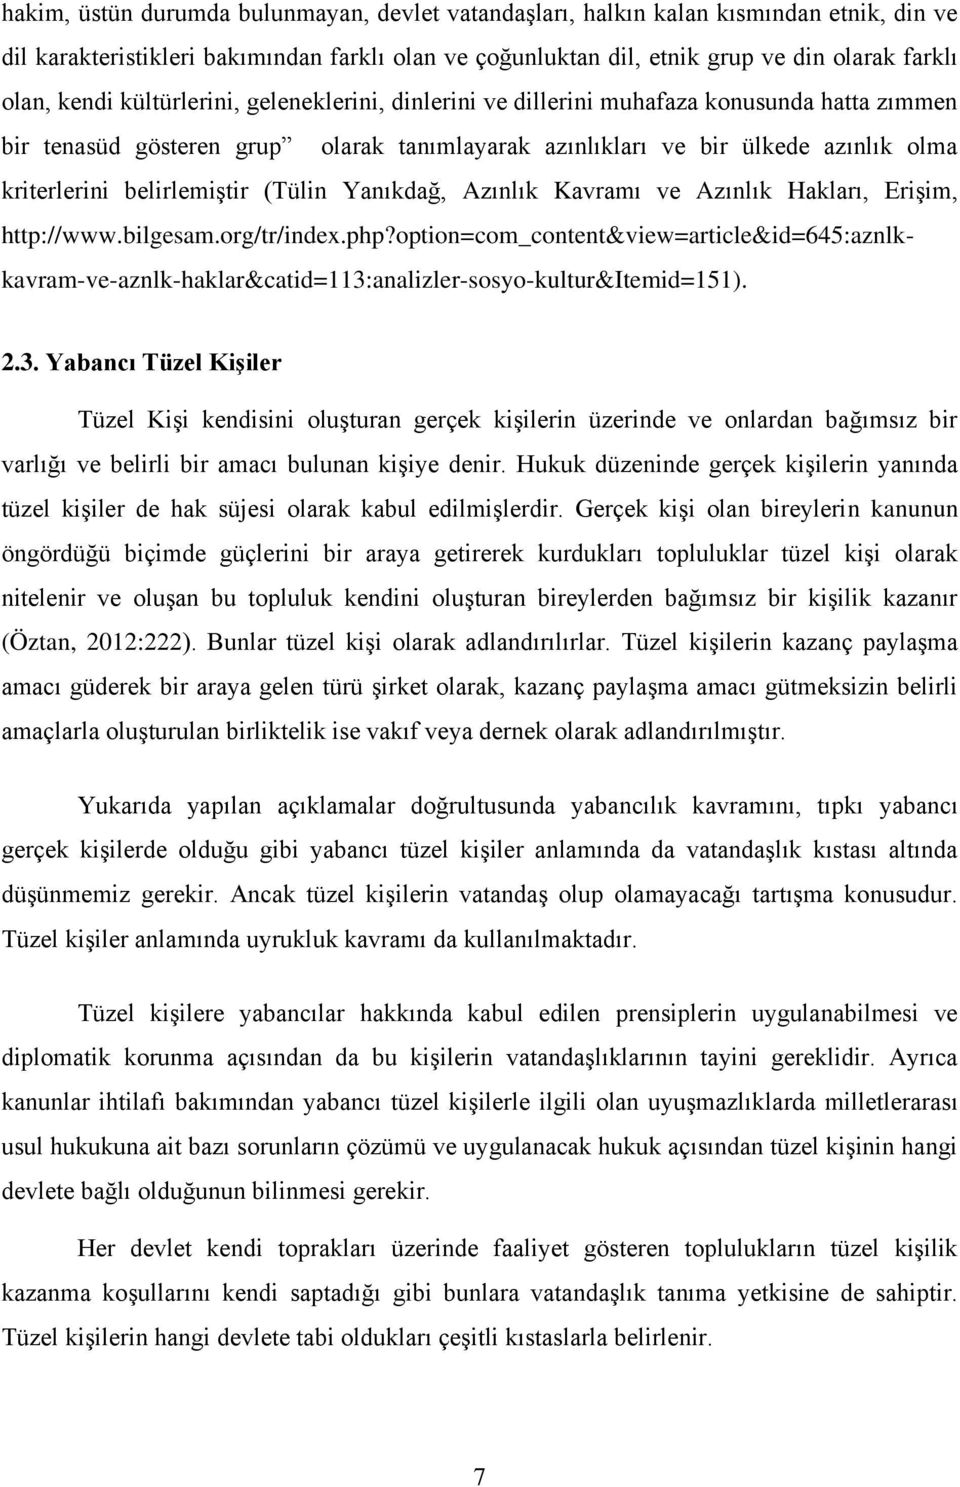 (Tülin Yanıkdağ, Azınlık Kavramı ve Azınlık Hakları, Erişim, http://www.bilgesam.org/tr/index.php?